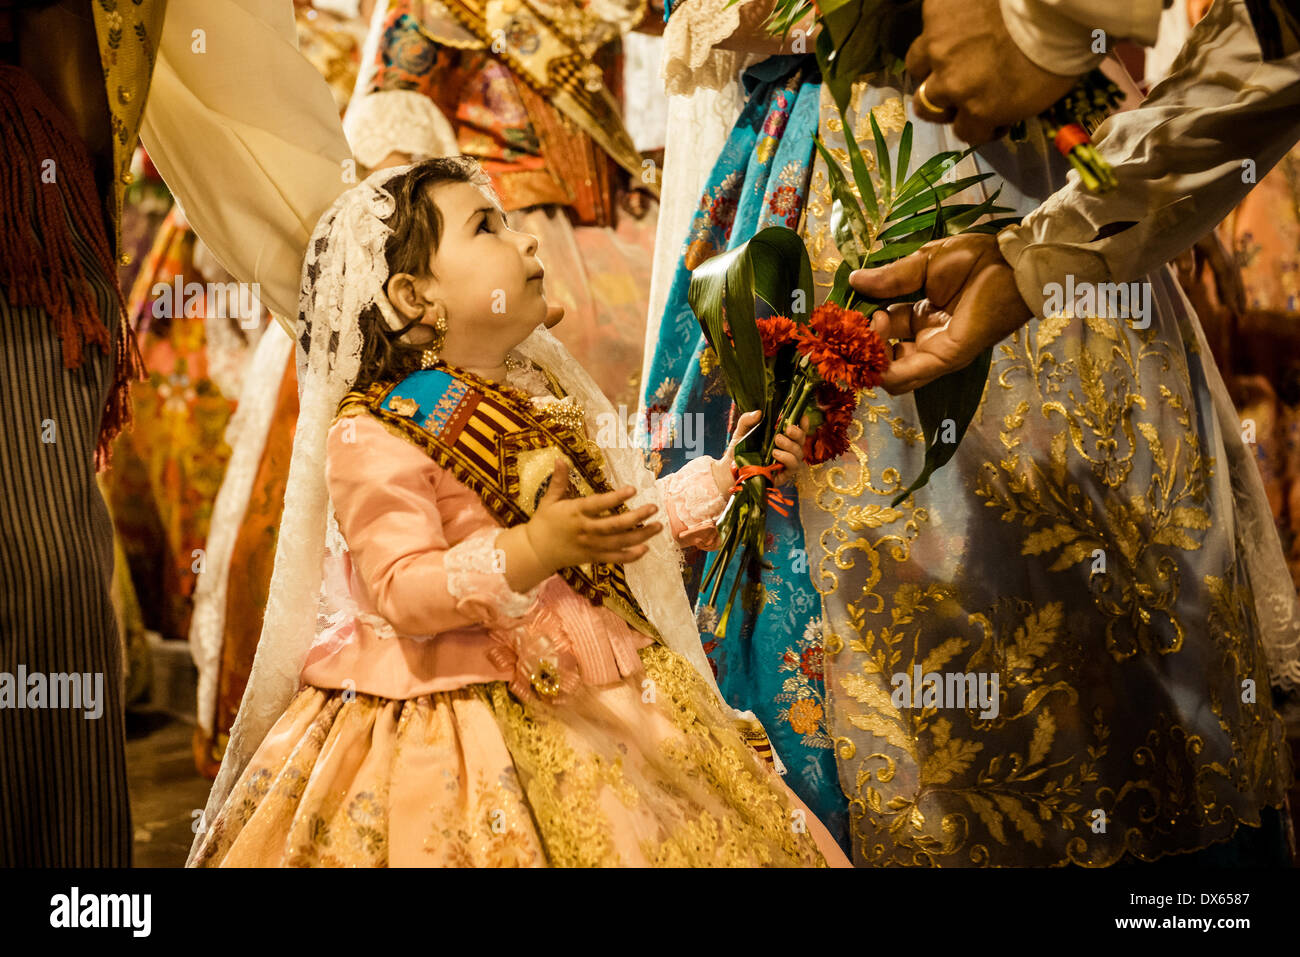 Valencia, Spanien. 18. März 2014: ein wenig Fallera schließlich bietet ihren Blumenstrauß der Jungfrau und übergibt sie an die Jungfrauen Bild platziert werden. Bildnachweis: Matthi/Alamy Live-Nachrichten Stockfoto